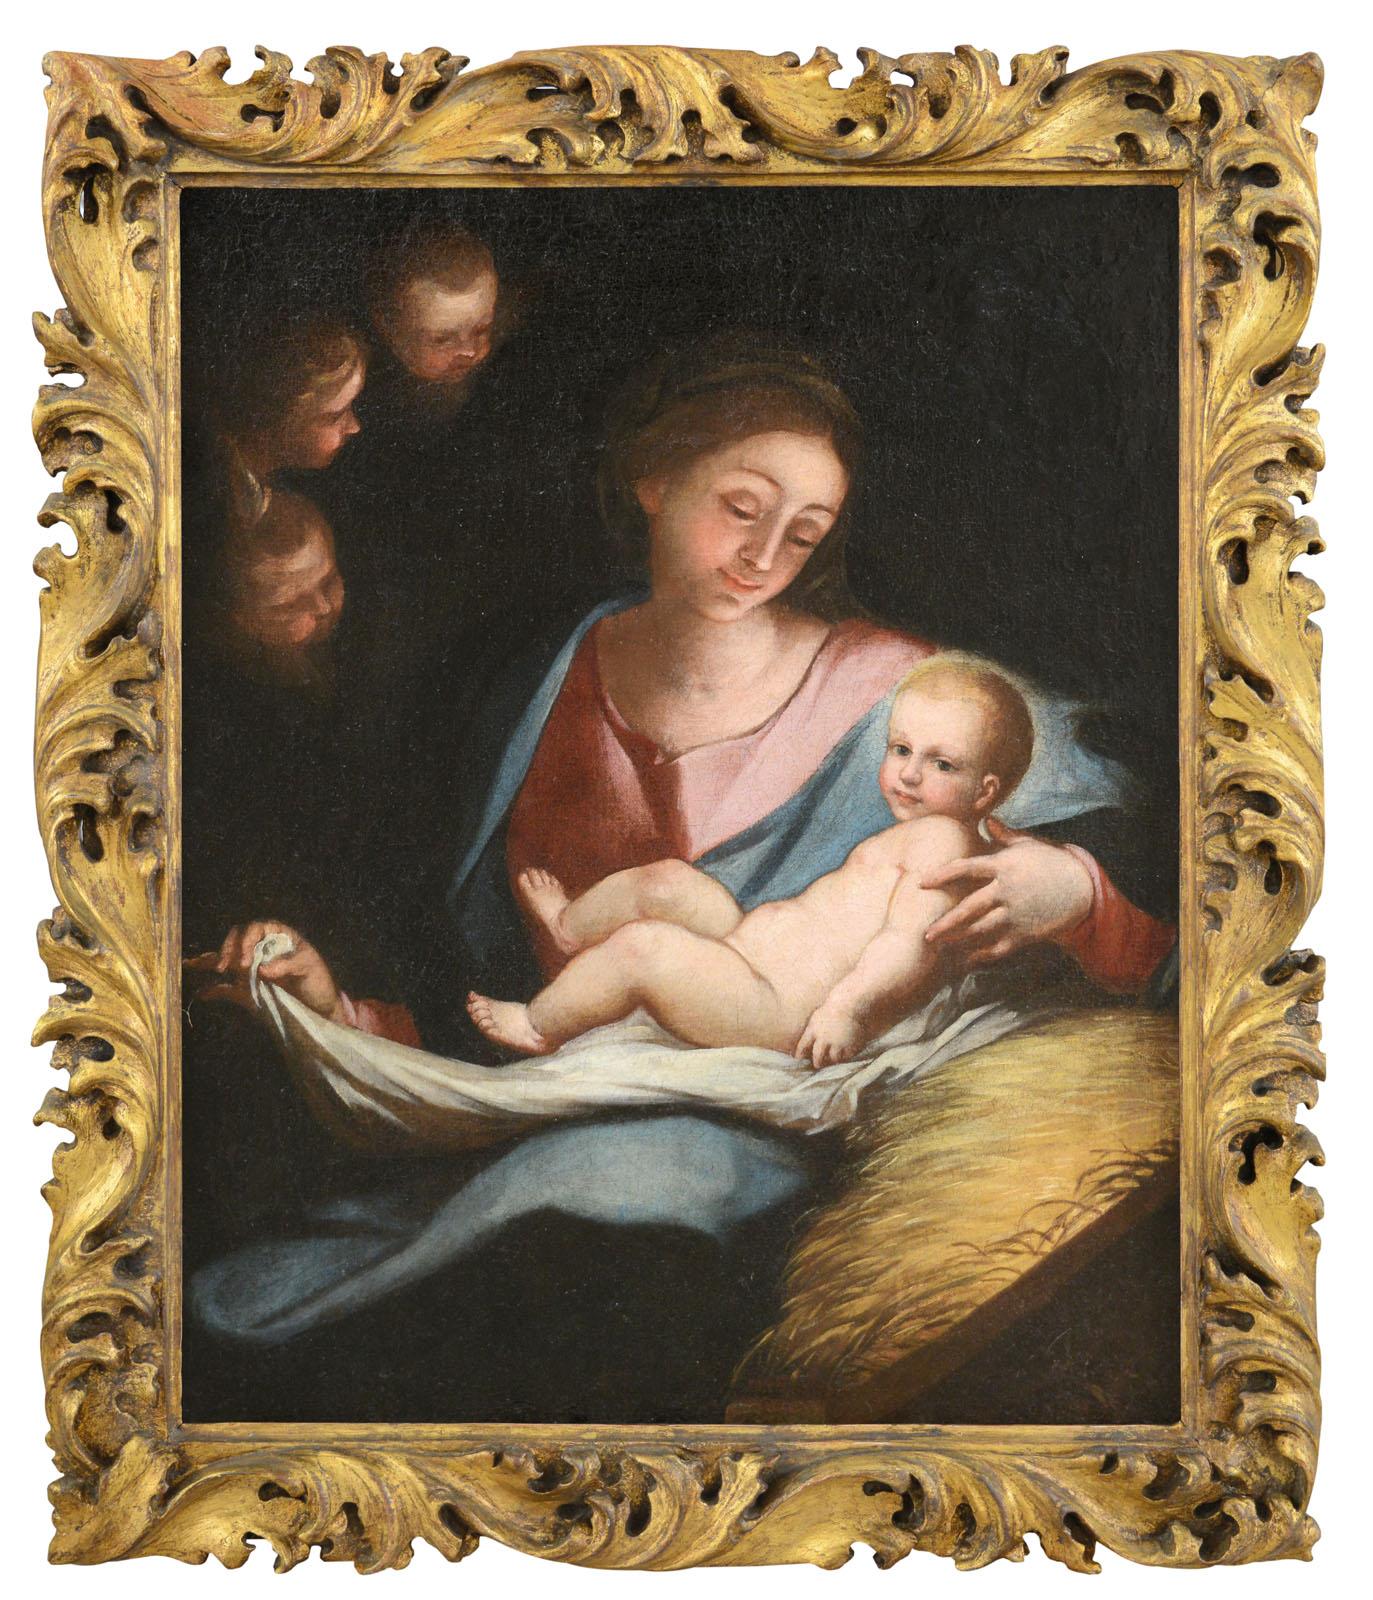 Anton Maria Piola (genoa, 1654 - 1715) Portrait Painting -  Madonna Maria Piola Paint Oil on canvas 17/18th Century Old master Religious